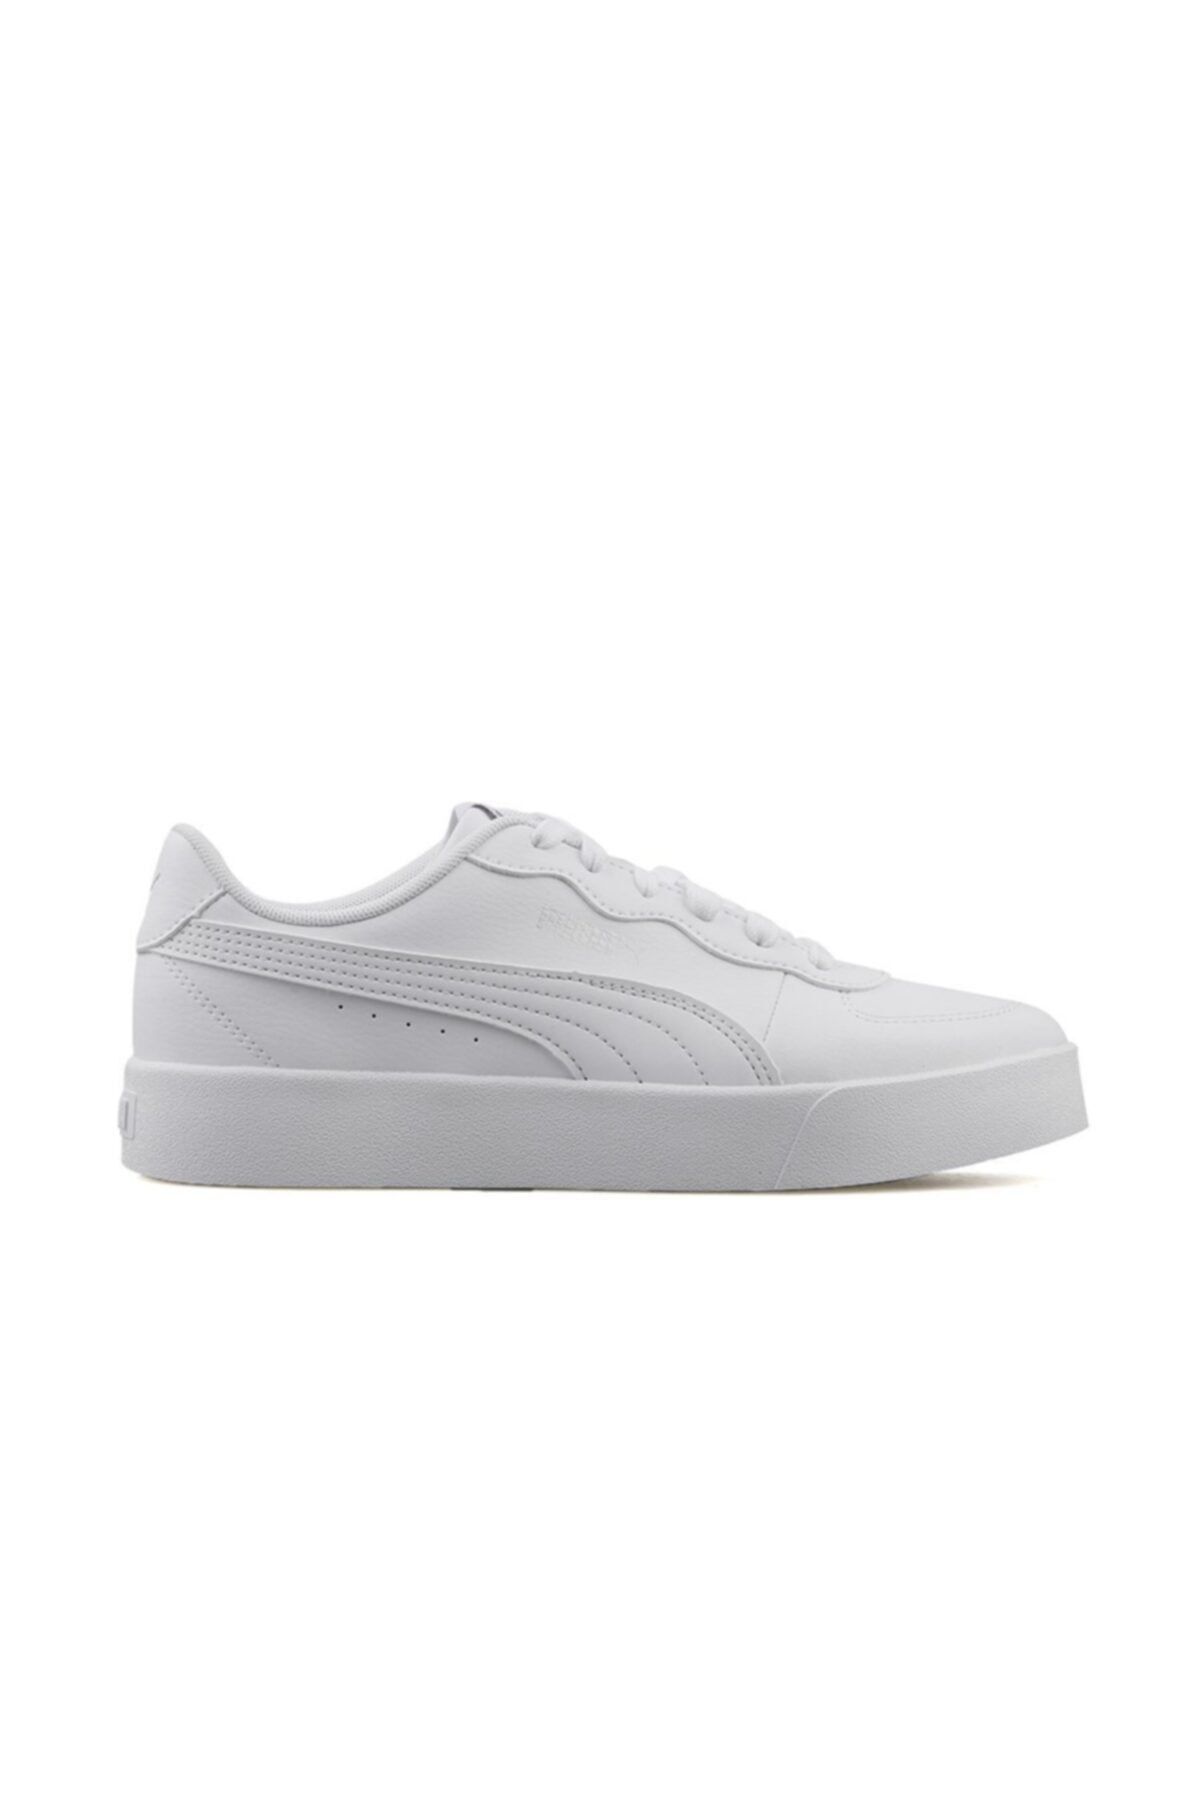 Puma Skye Clean Kadın Beyaz Sneaker